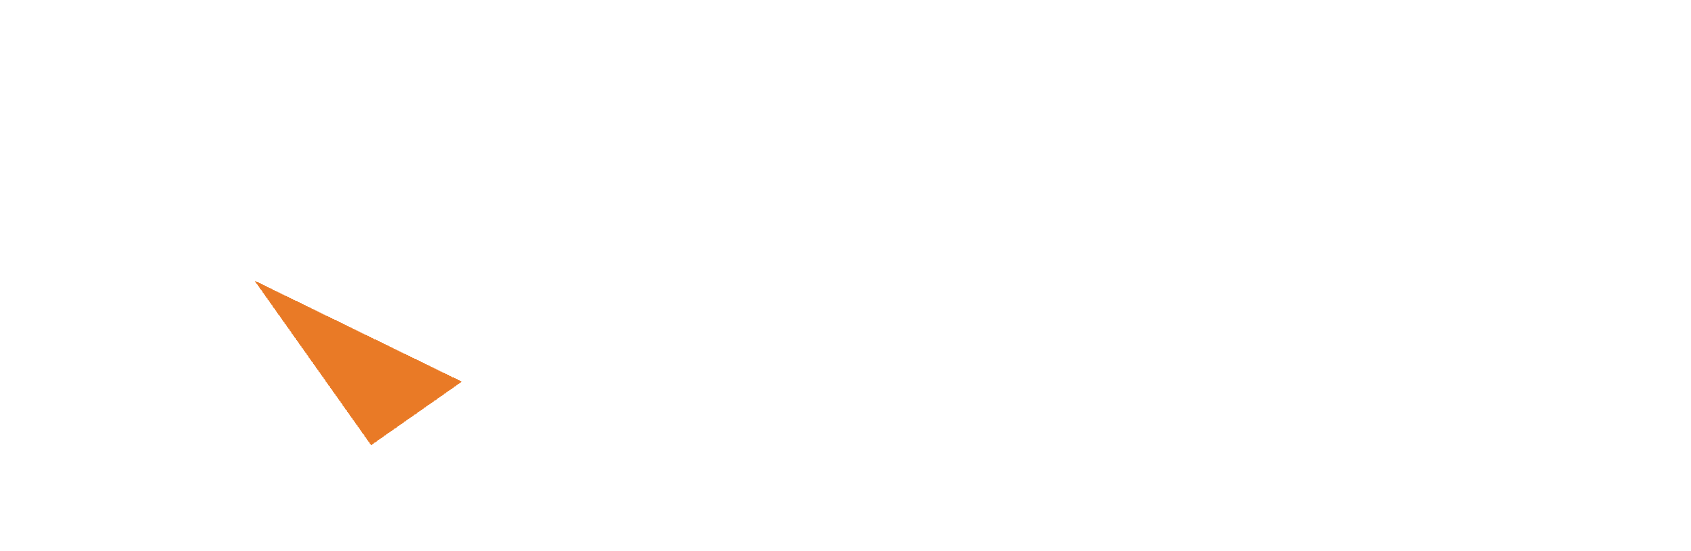 White Chromateq logo